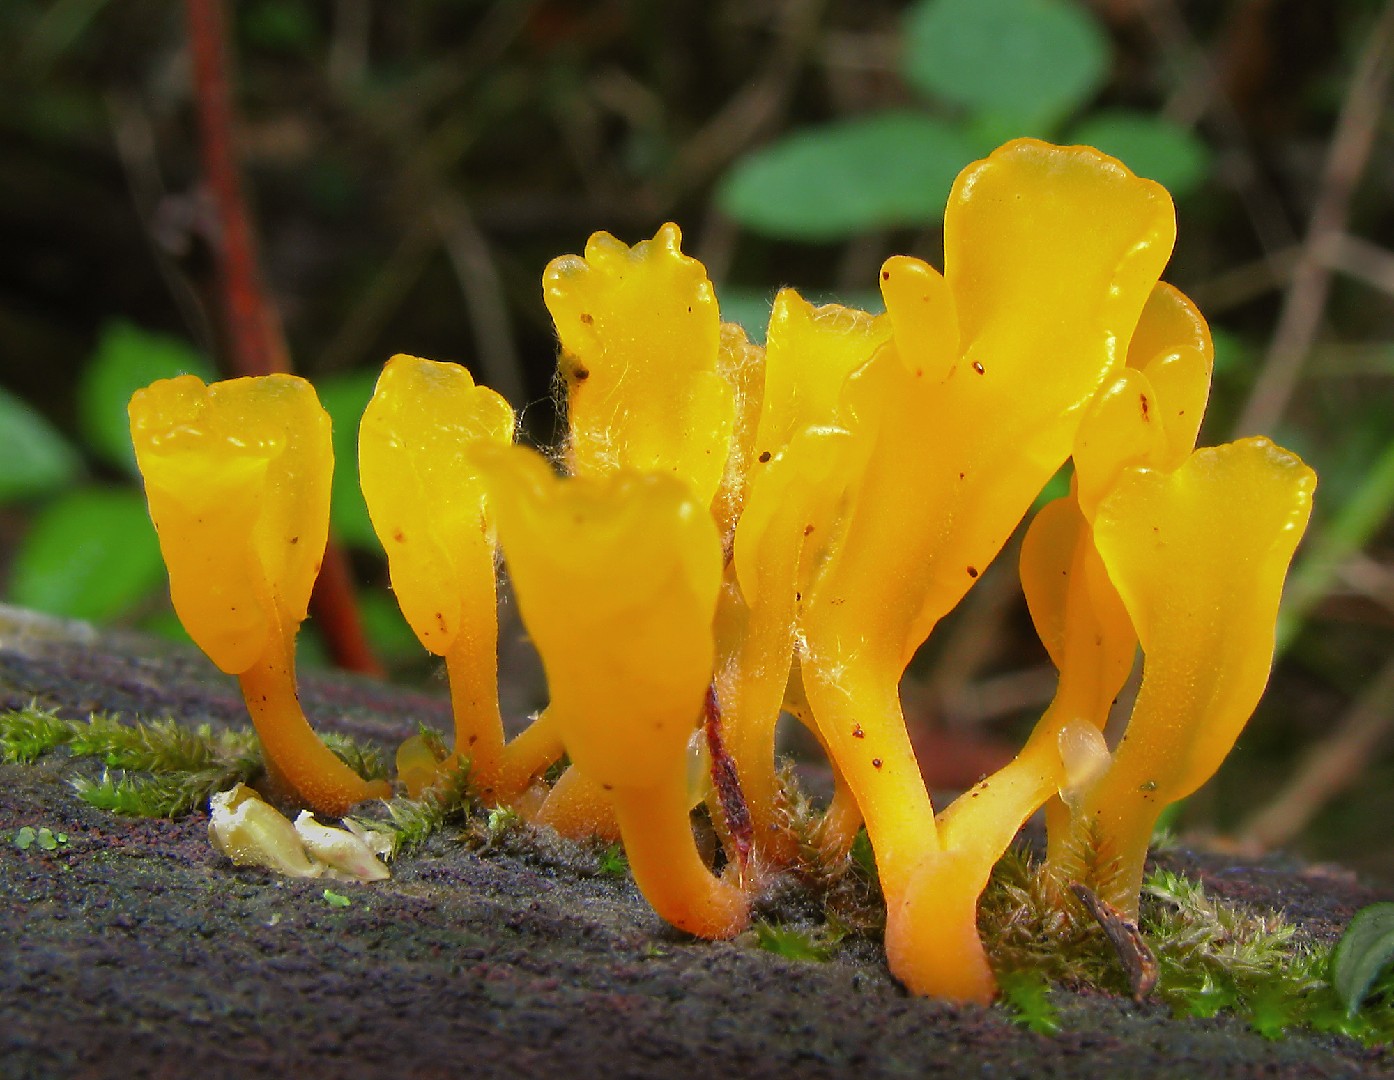 Fan-shaped jelly-fungus